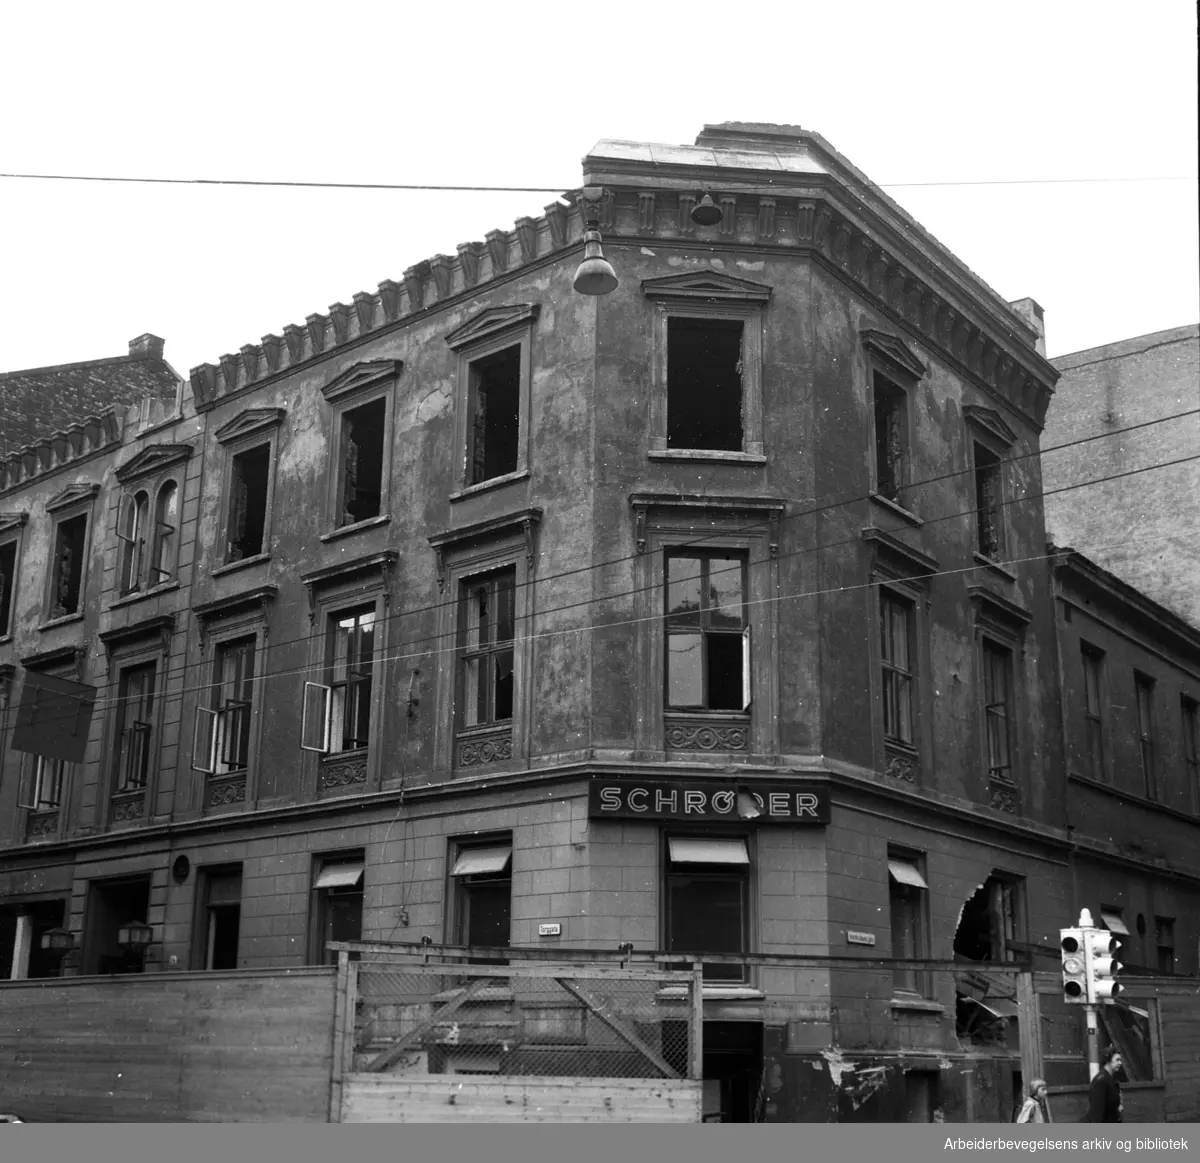 Det gamle Folkets Hus rives..Torggata 14 (Oslo Arbeidersamfund med Schrøder) rives,.september 1954